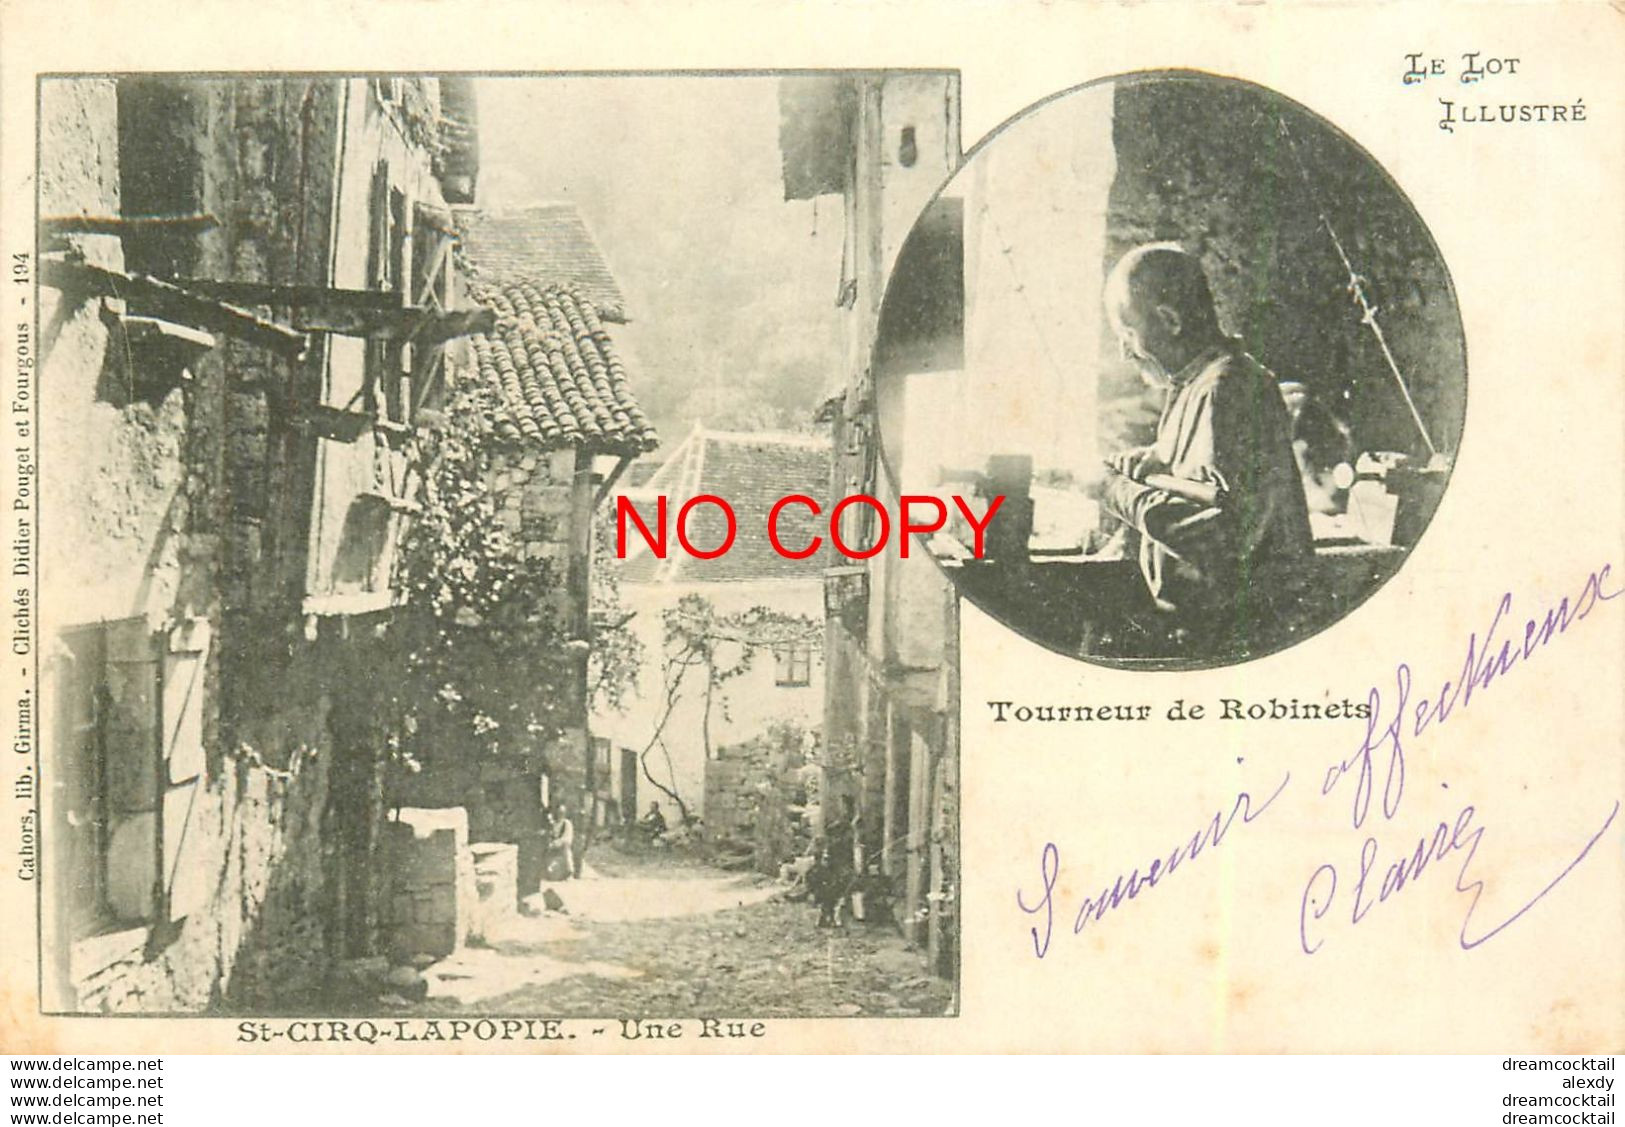 46 SAINT-CIRQ-LAPOPIE. Une Rue Et Un Tourneur De Robinets. 5 Beaux Timbres De 1 Centime 1902 - Saint-Cirq-Lapopie